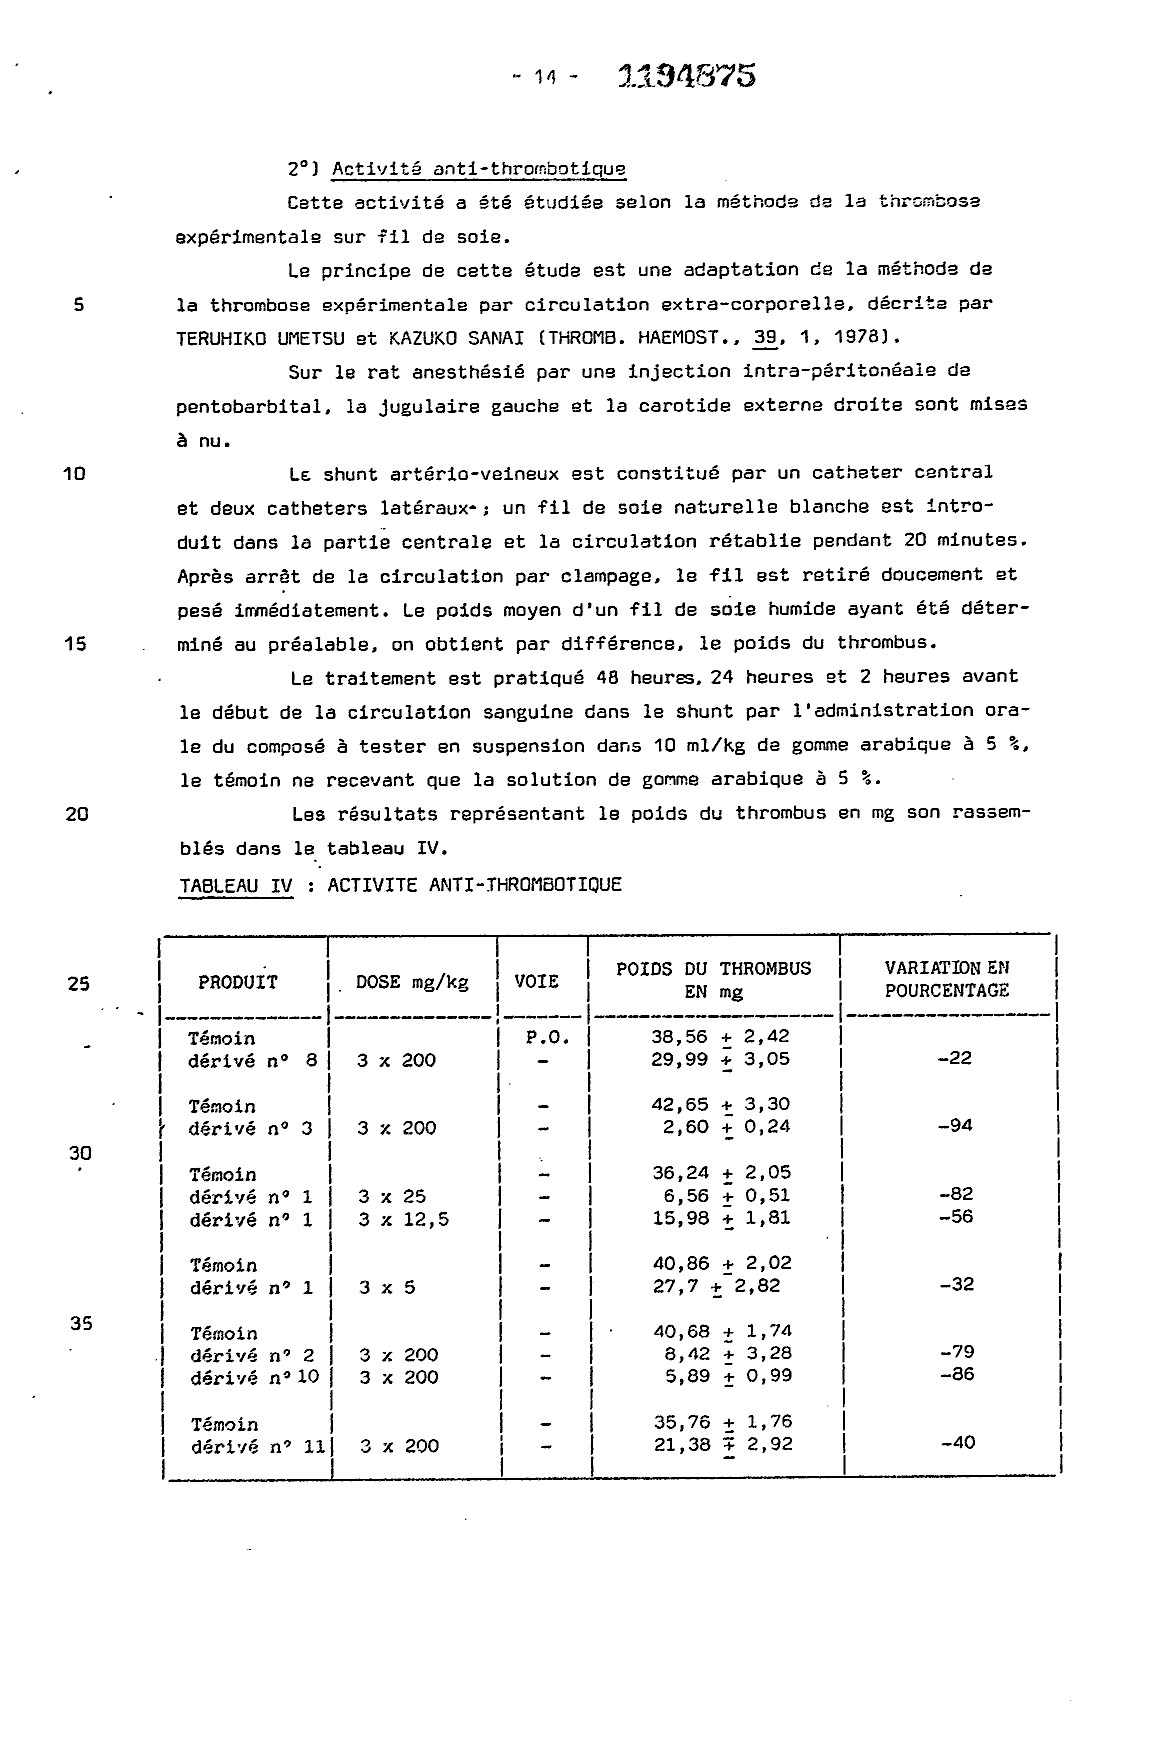 Canadian Patent Document 1194875. Description 19921218. Image 14 of 15